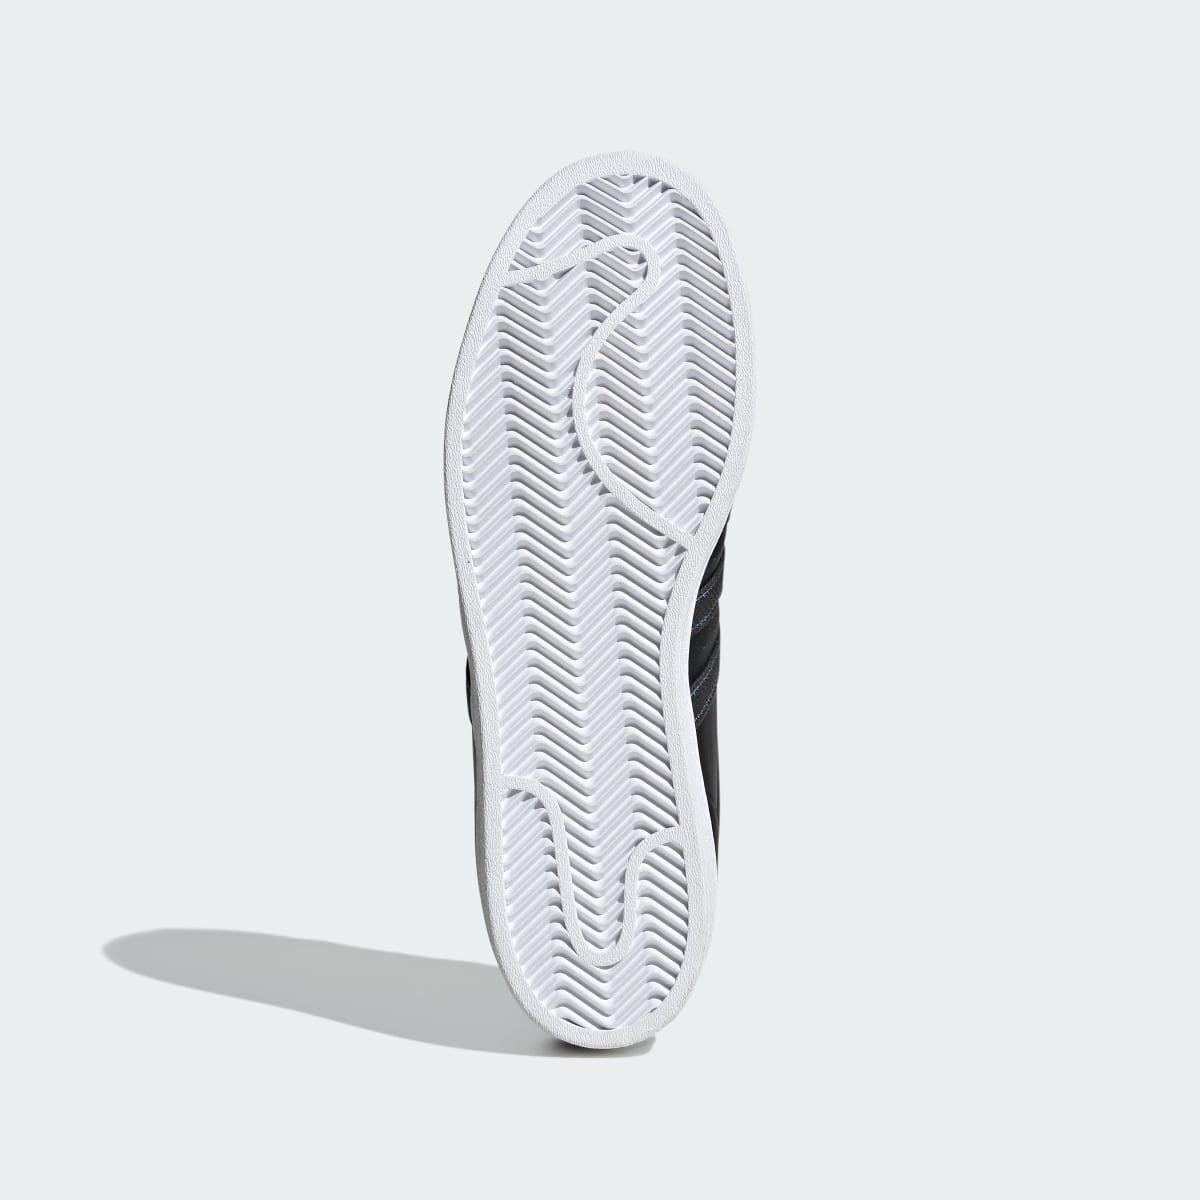 Adidas Superstar Ayakkabı. 7